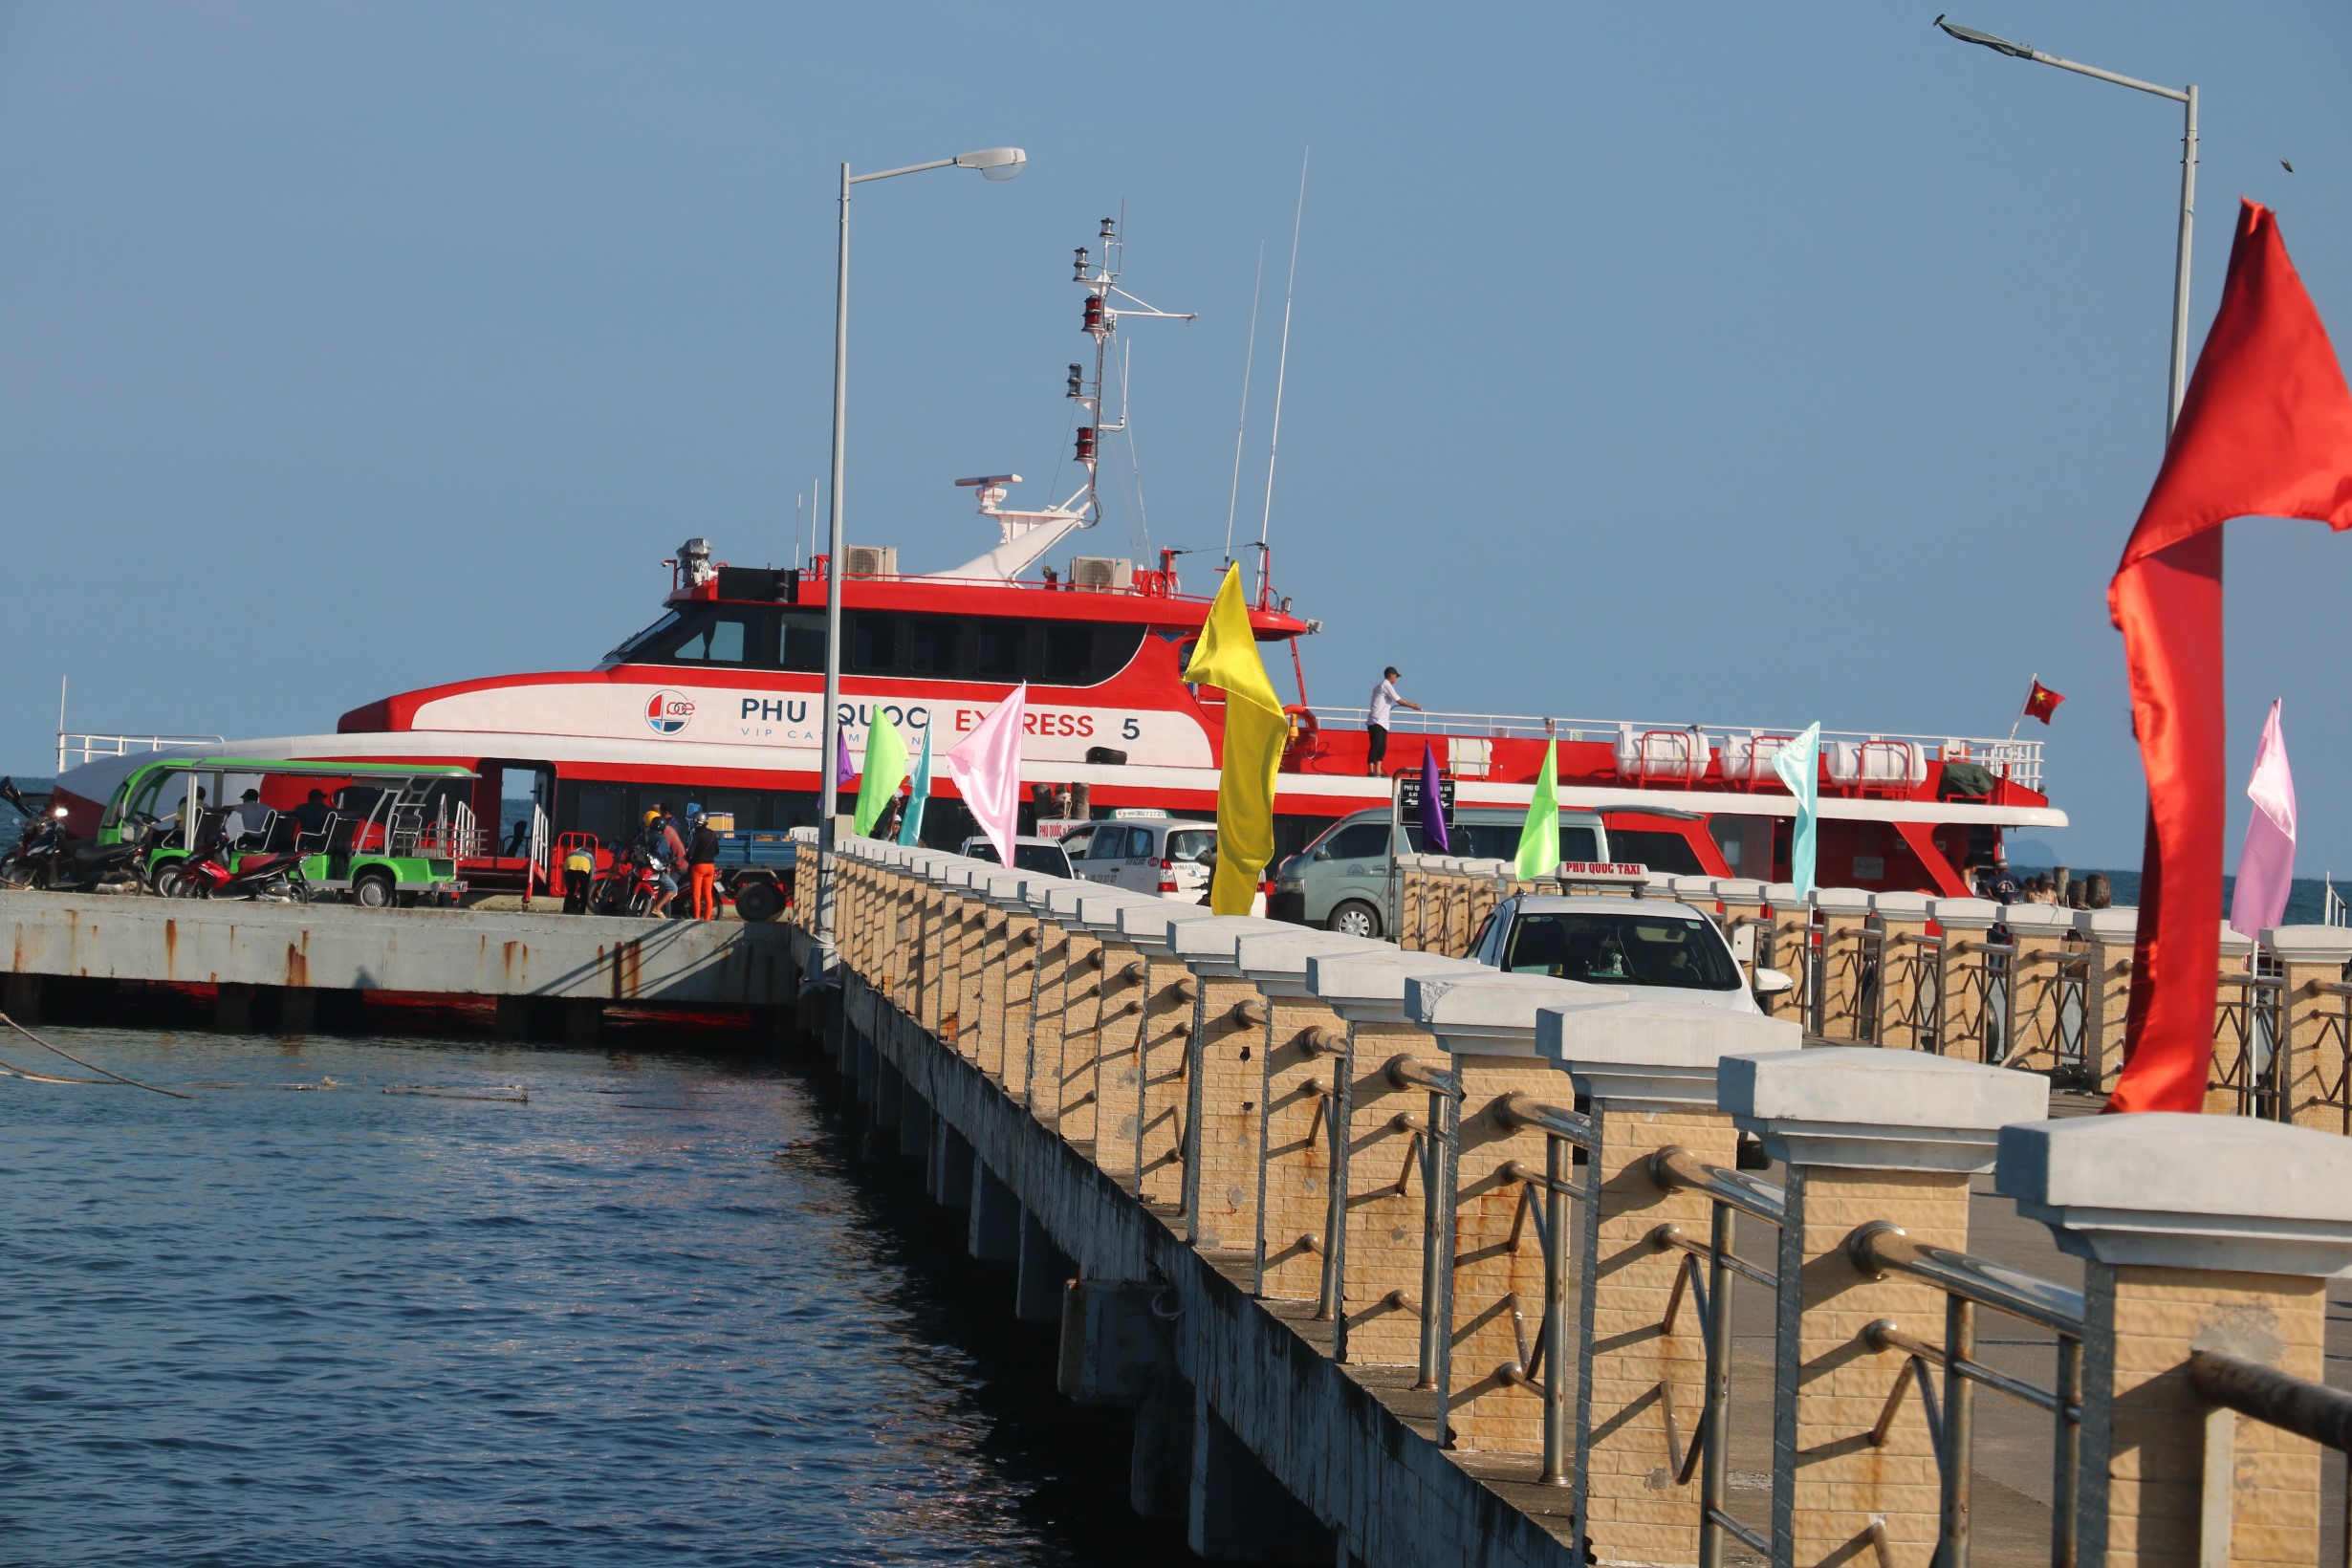 Tàu cao tốc Phú Quốc Express 5 tại cảng Bãi Vòng